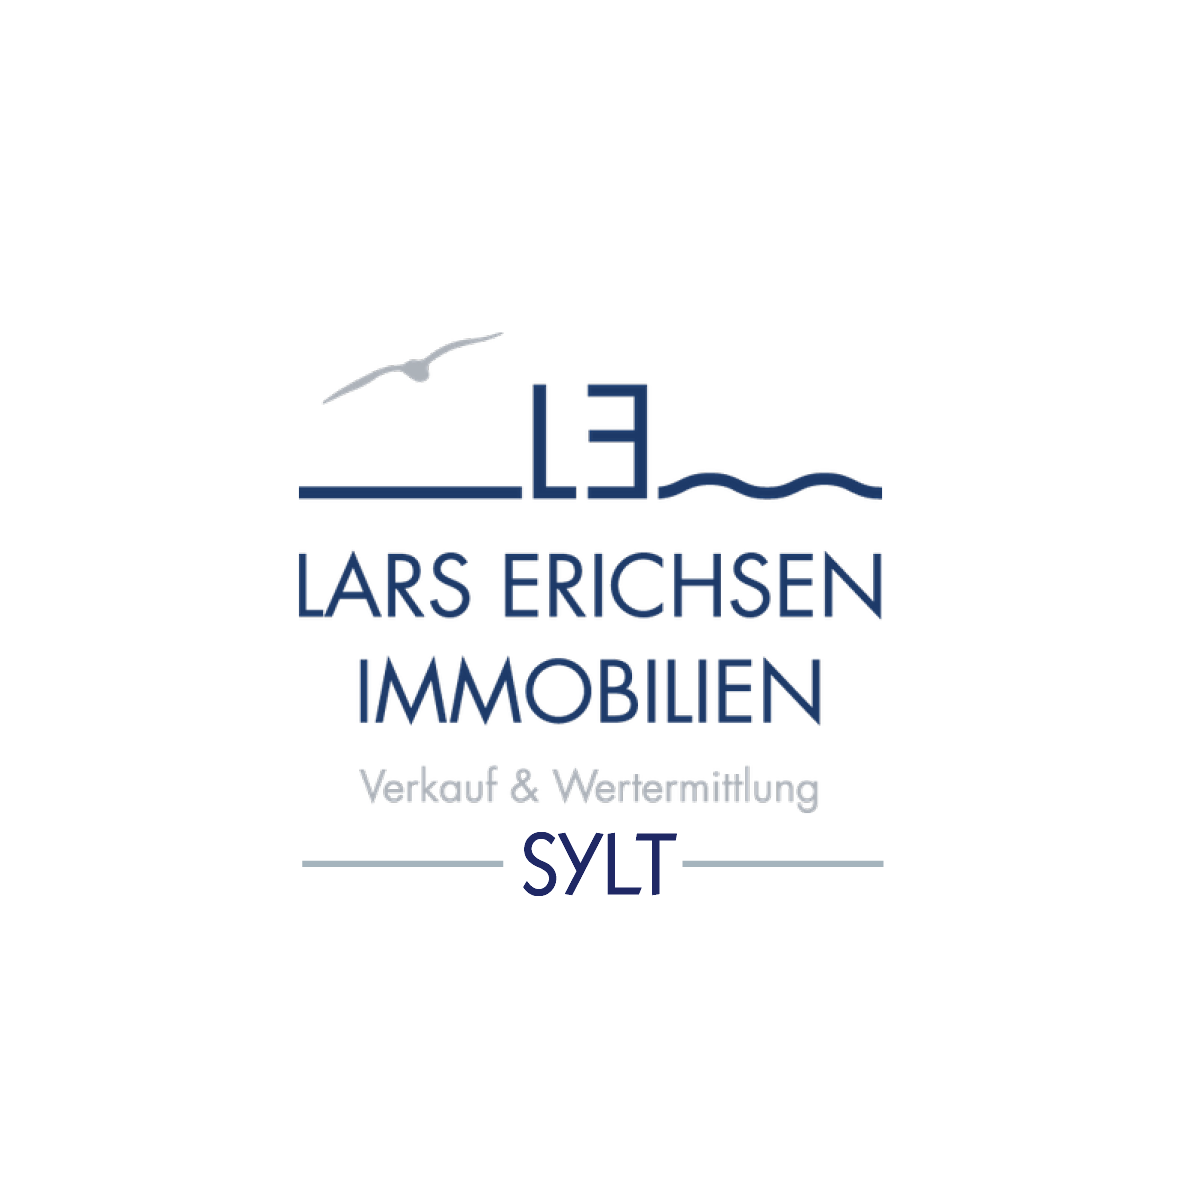 Lars Erichsen Immobilien_2